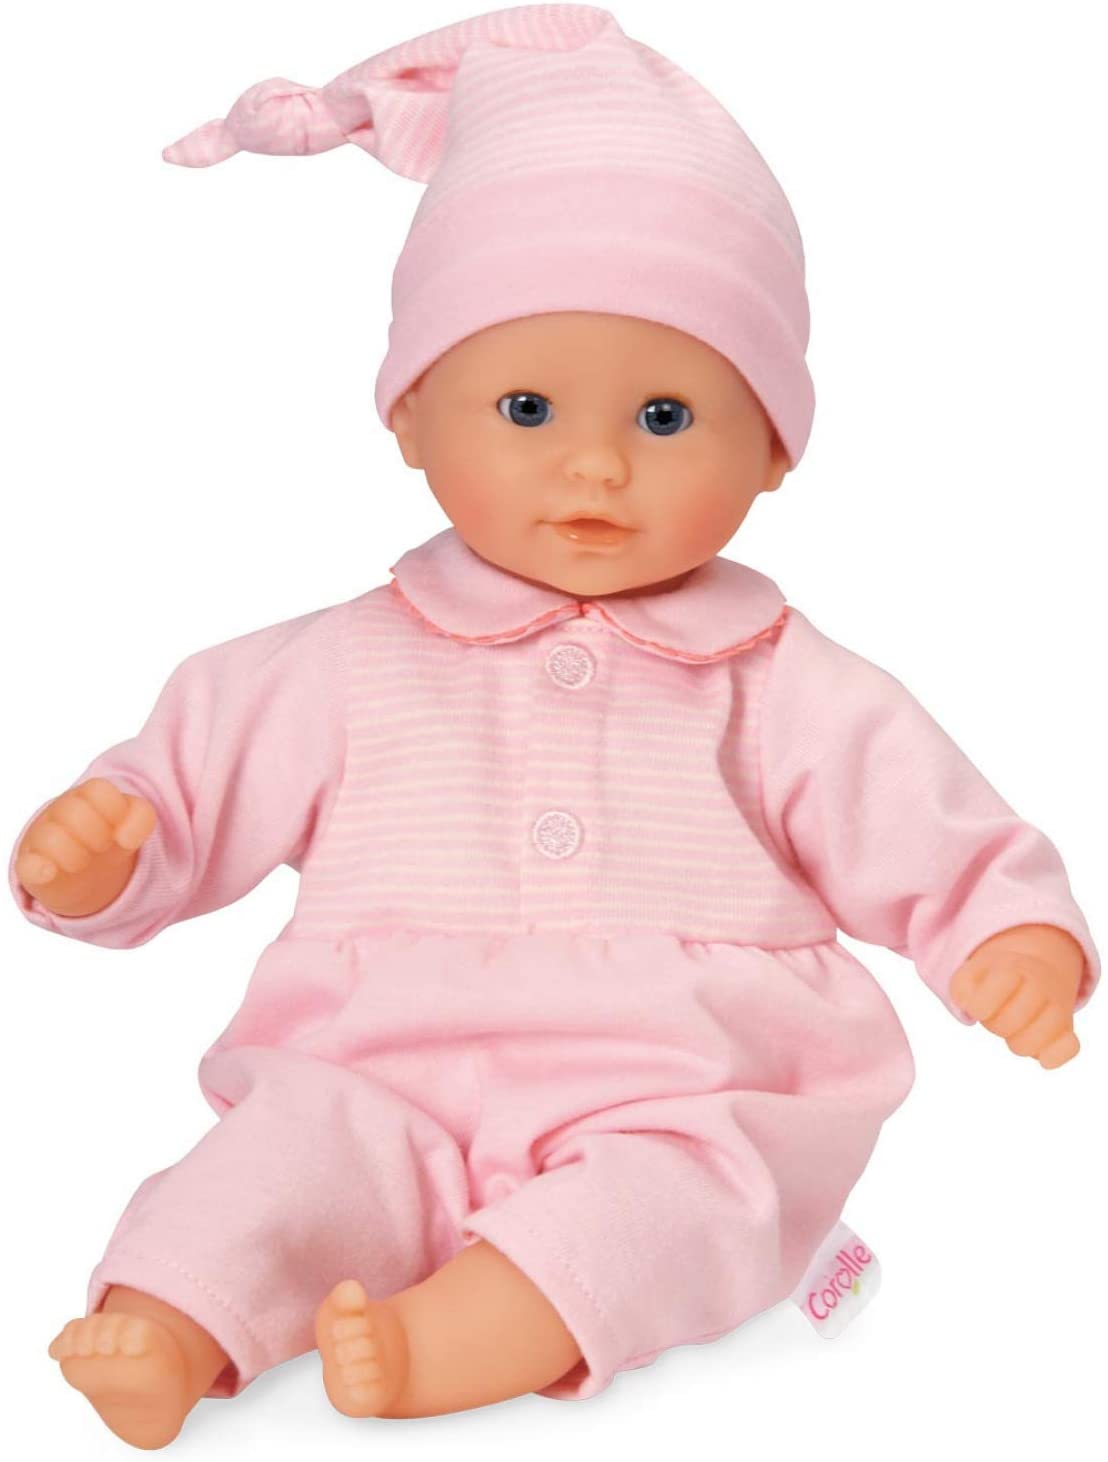 (OPEN BOX) Corolle Mon Premier Poupon Bebe Calin - Charming Pastel - 12" Baby Doll, Pink